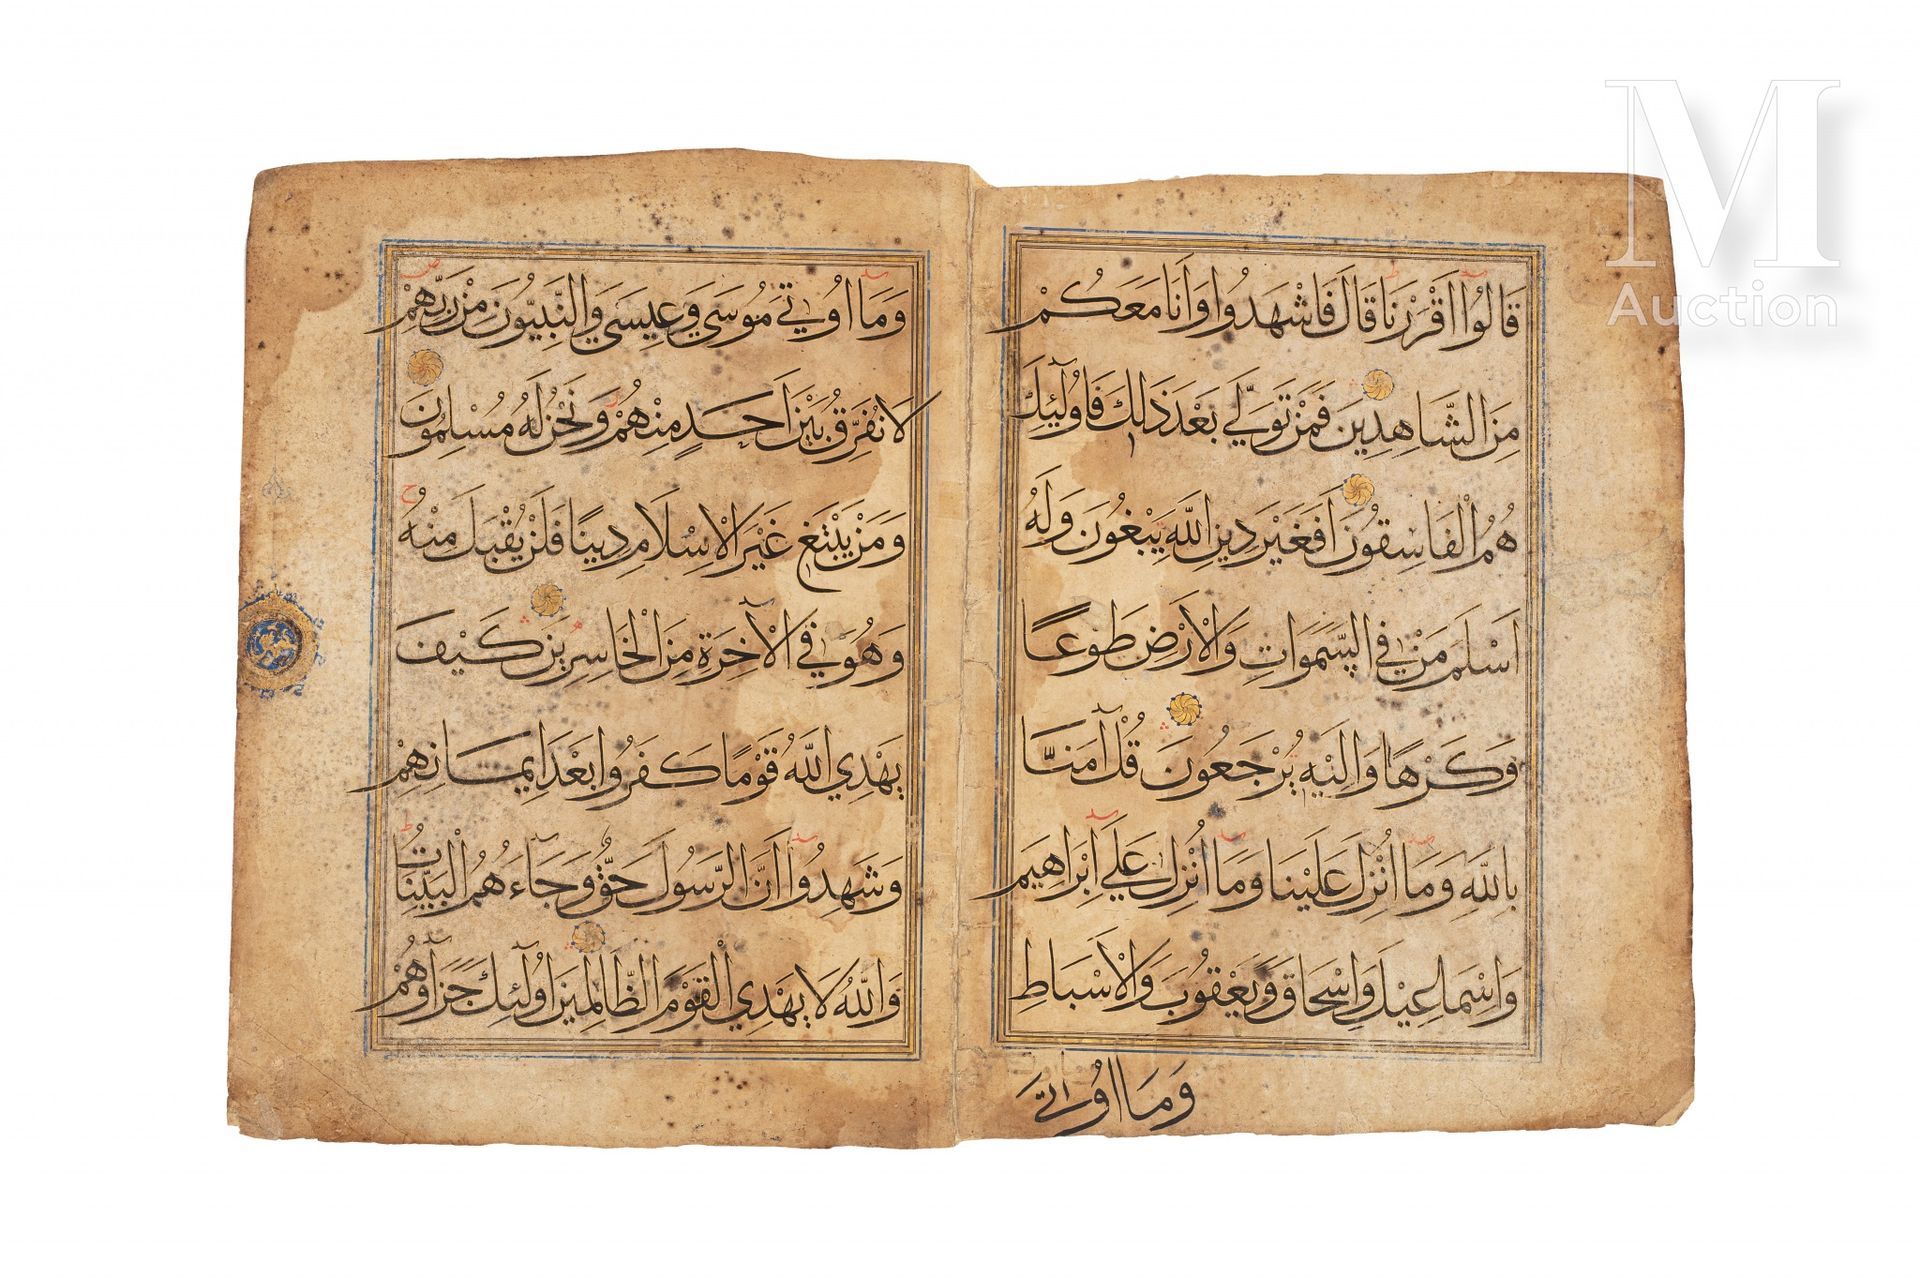 Double-page de Coran persan Iran, fine XIV secolo - inizio XV secolo

Un doppio &hellip;